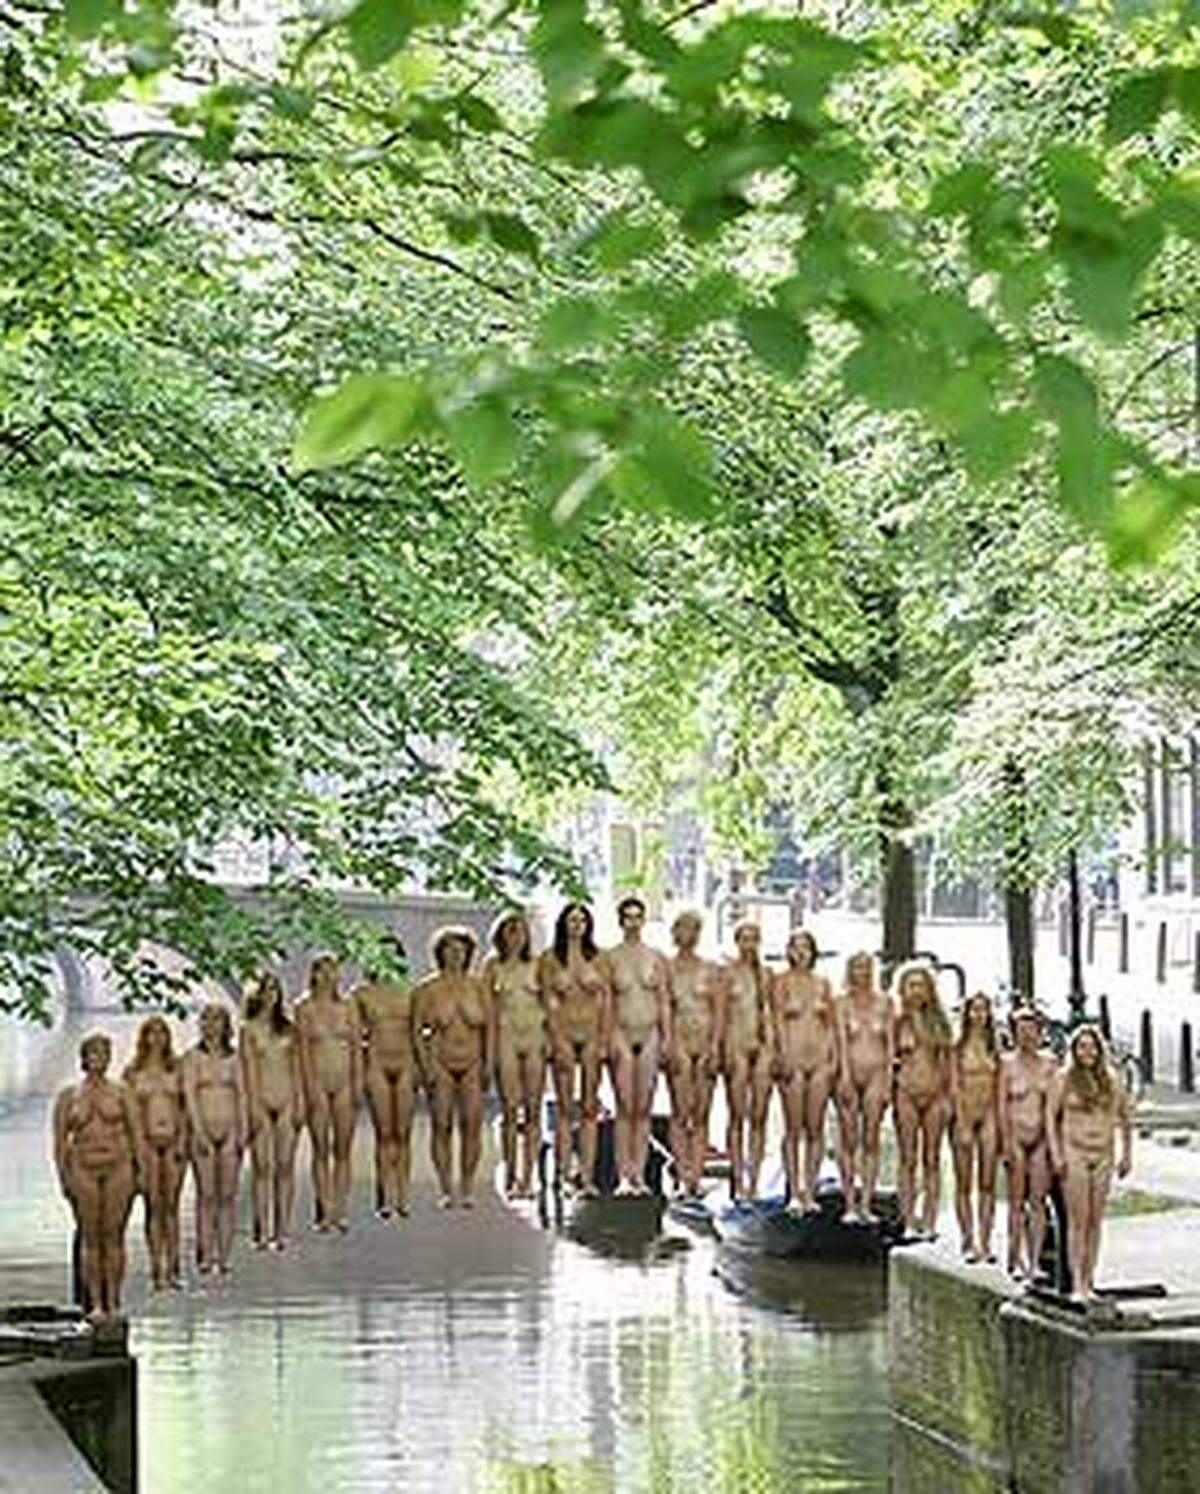 An vier verschiedenen Plätzen von Amsterdam hat US-Fotograf Spencer Tunick die Nackten in Pose gerückt.